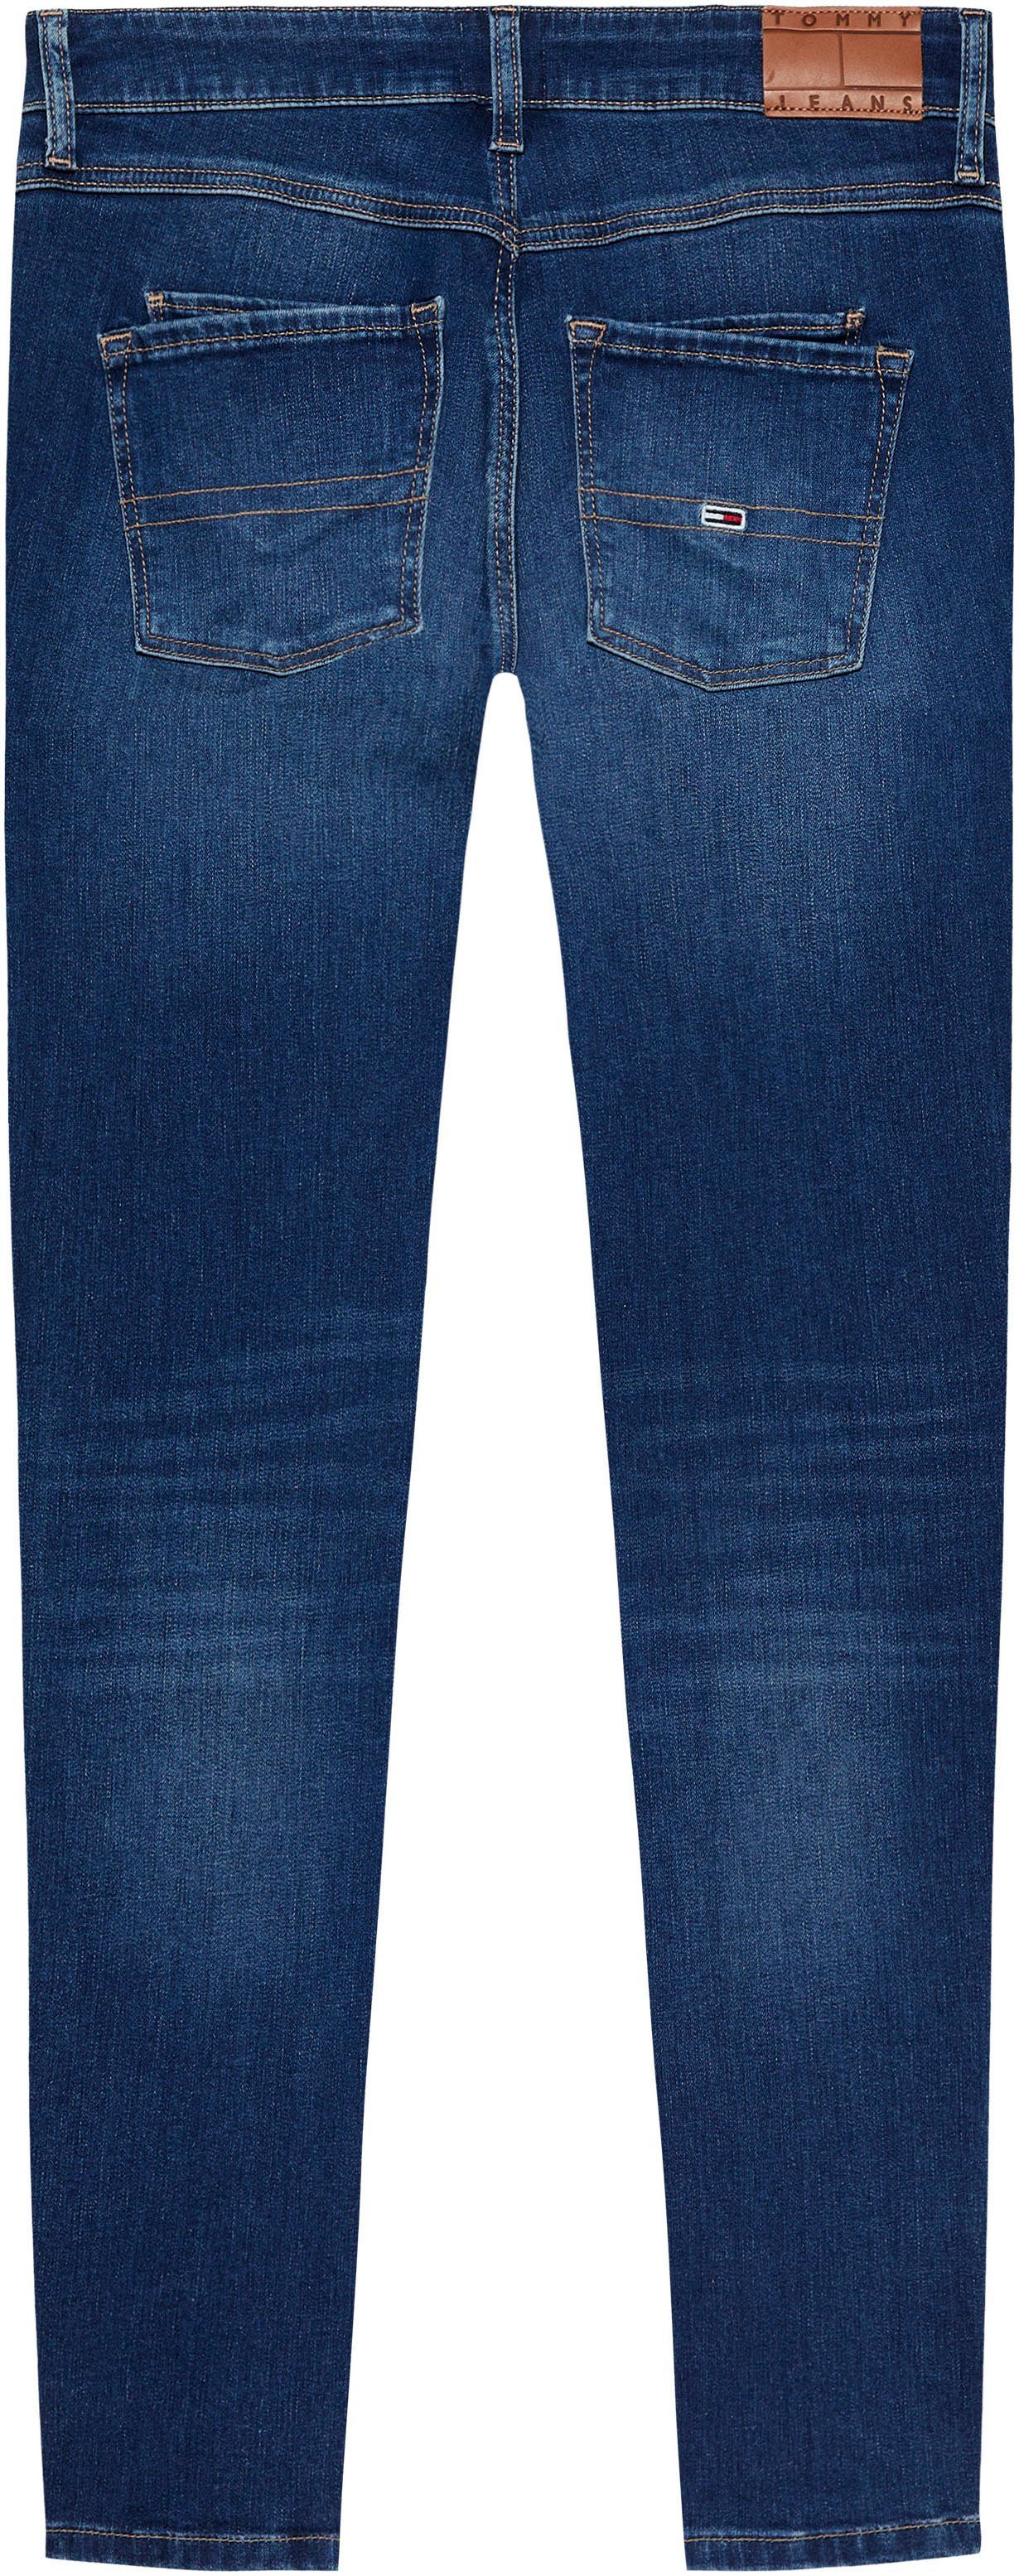 ANK ZIP LW Lederlogopatch Skinny-fit-Jeans Tommy Jeans mit SCARLETT SKN AH1239